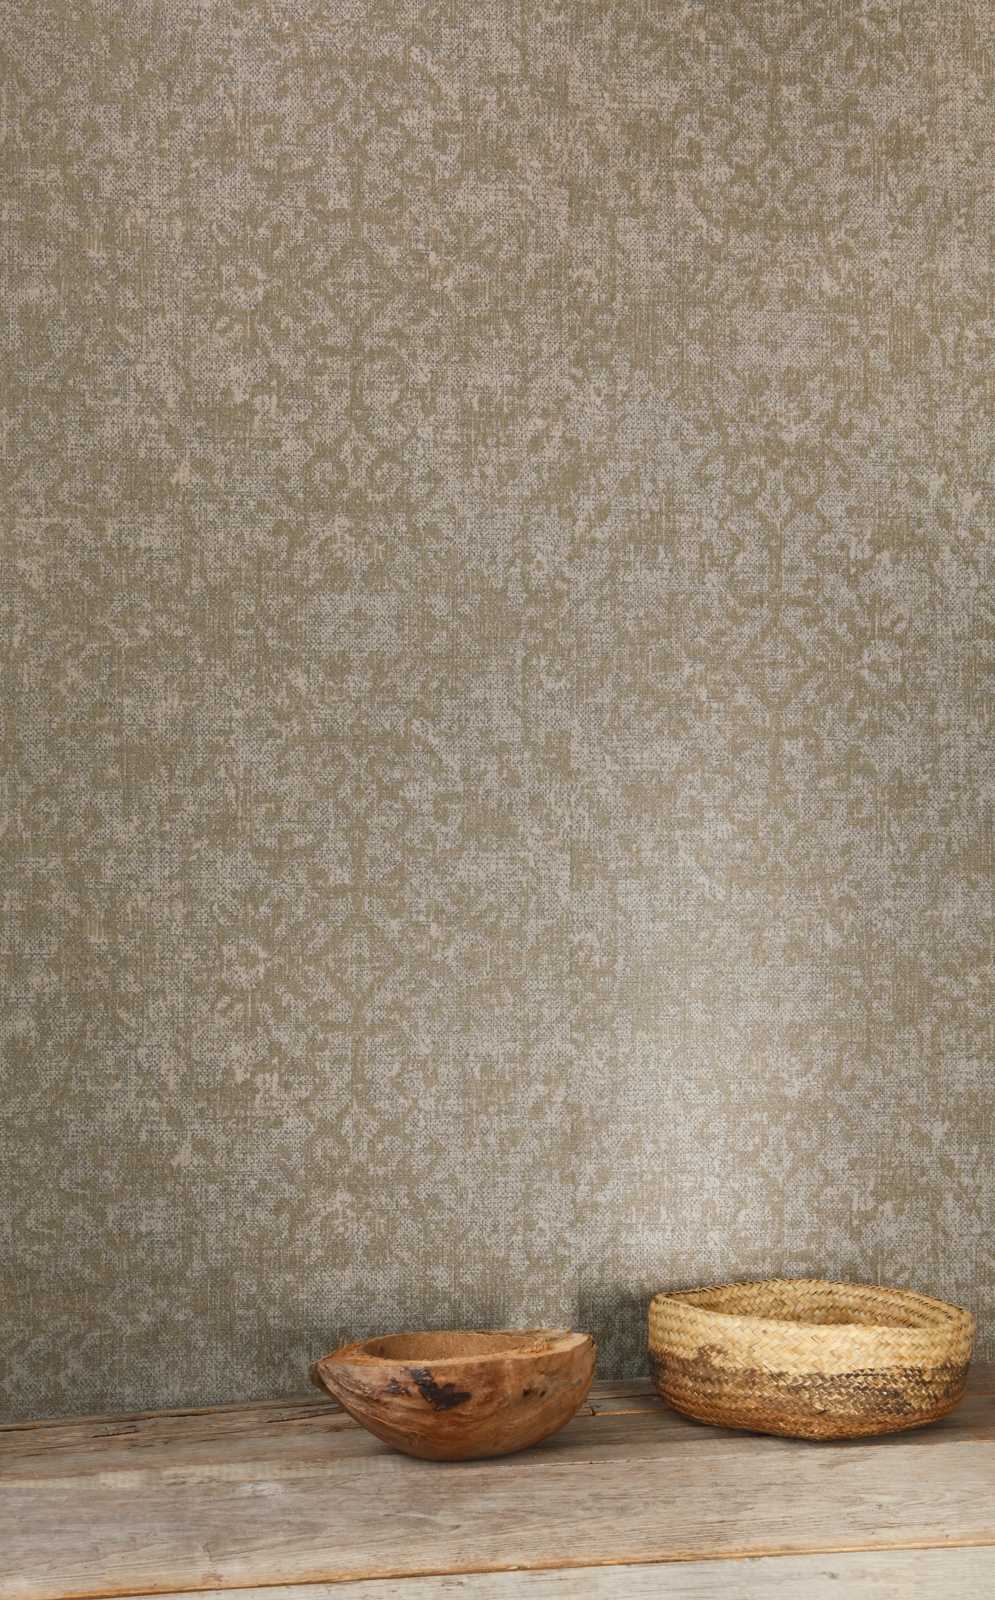             Ethno Tapete Grau-Braun mit Brokat Textiloptik
        